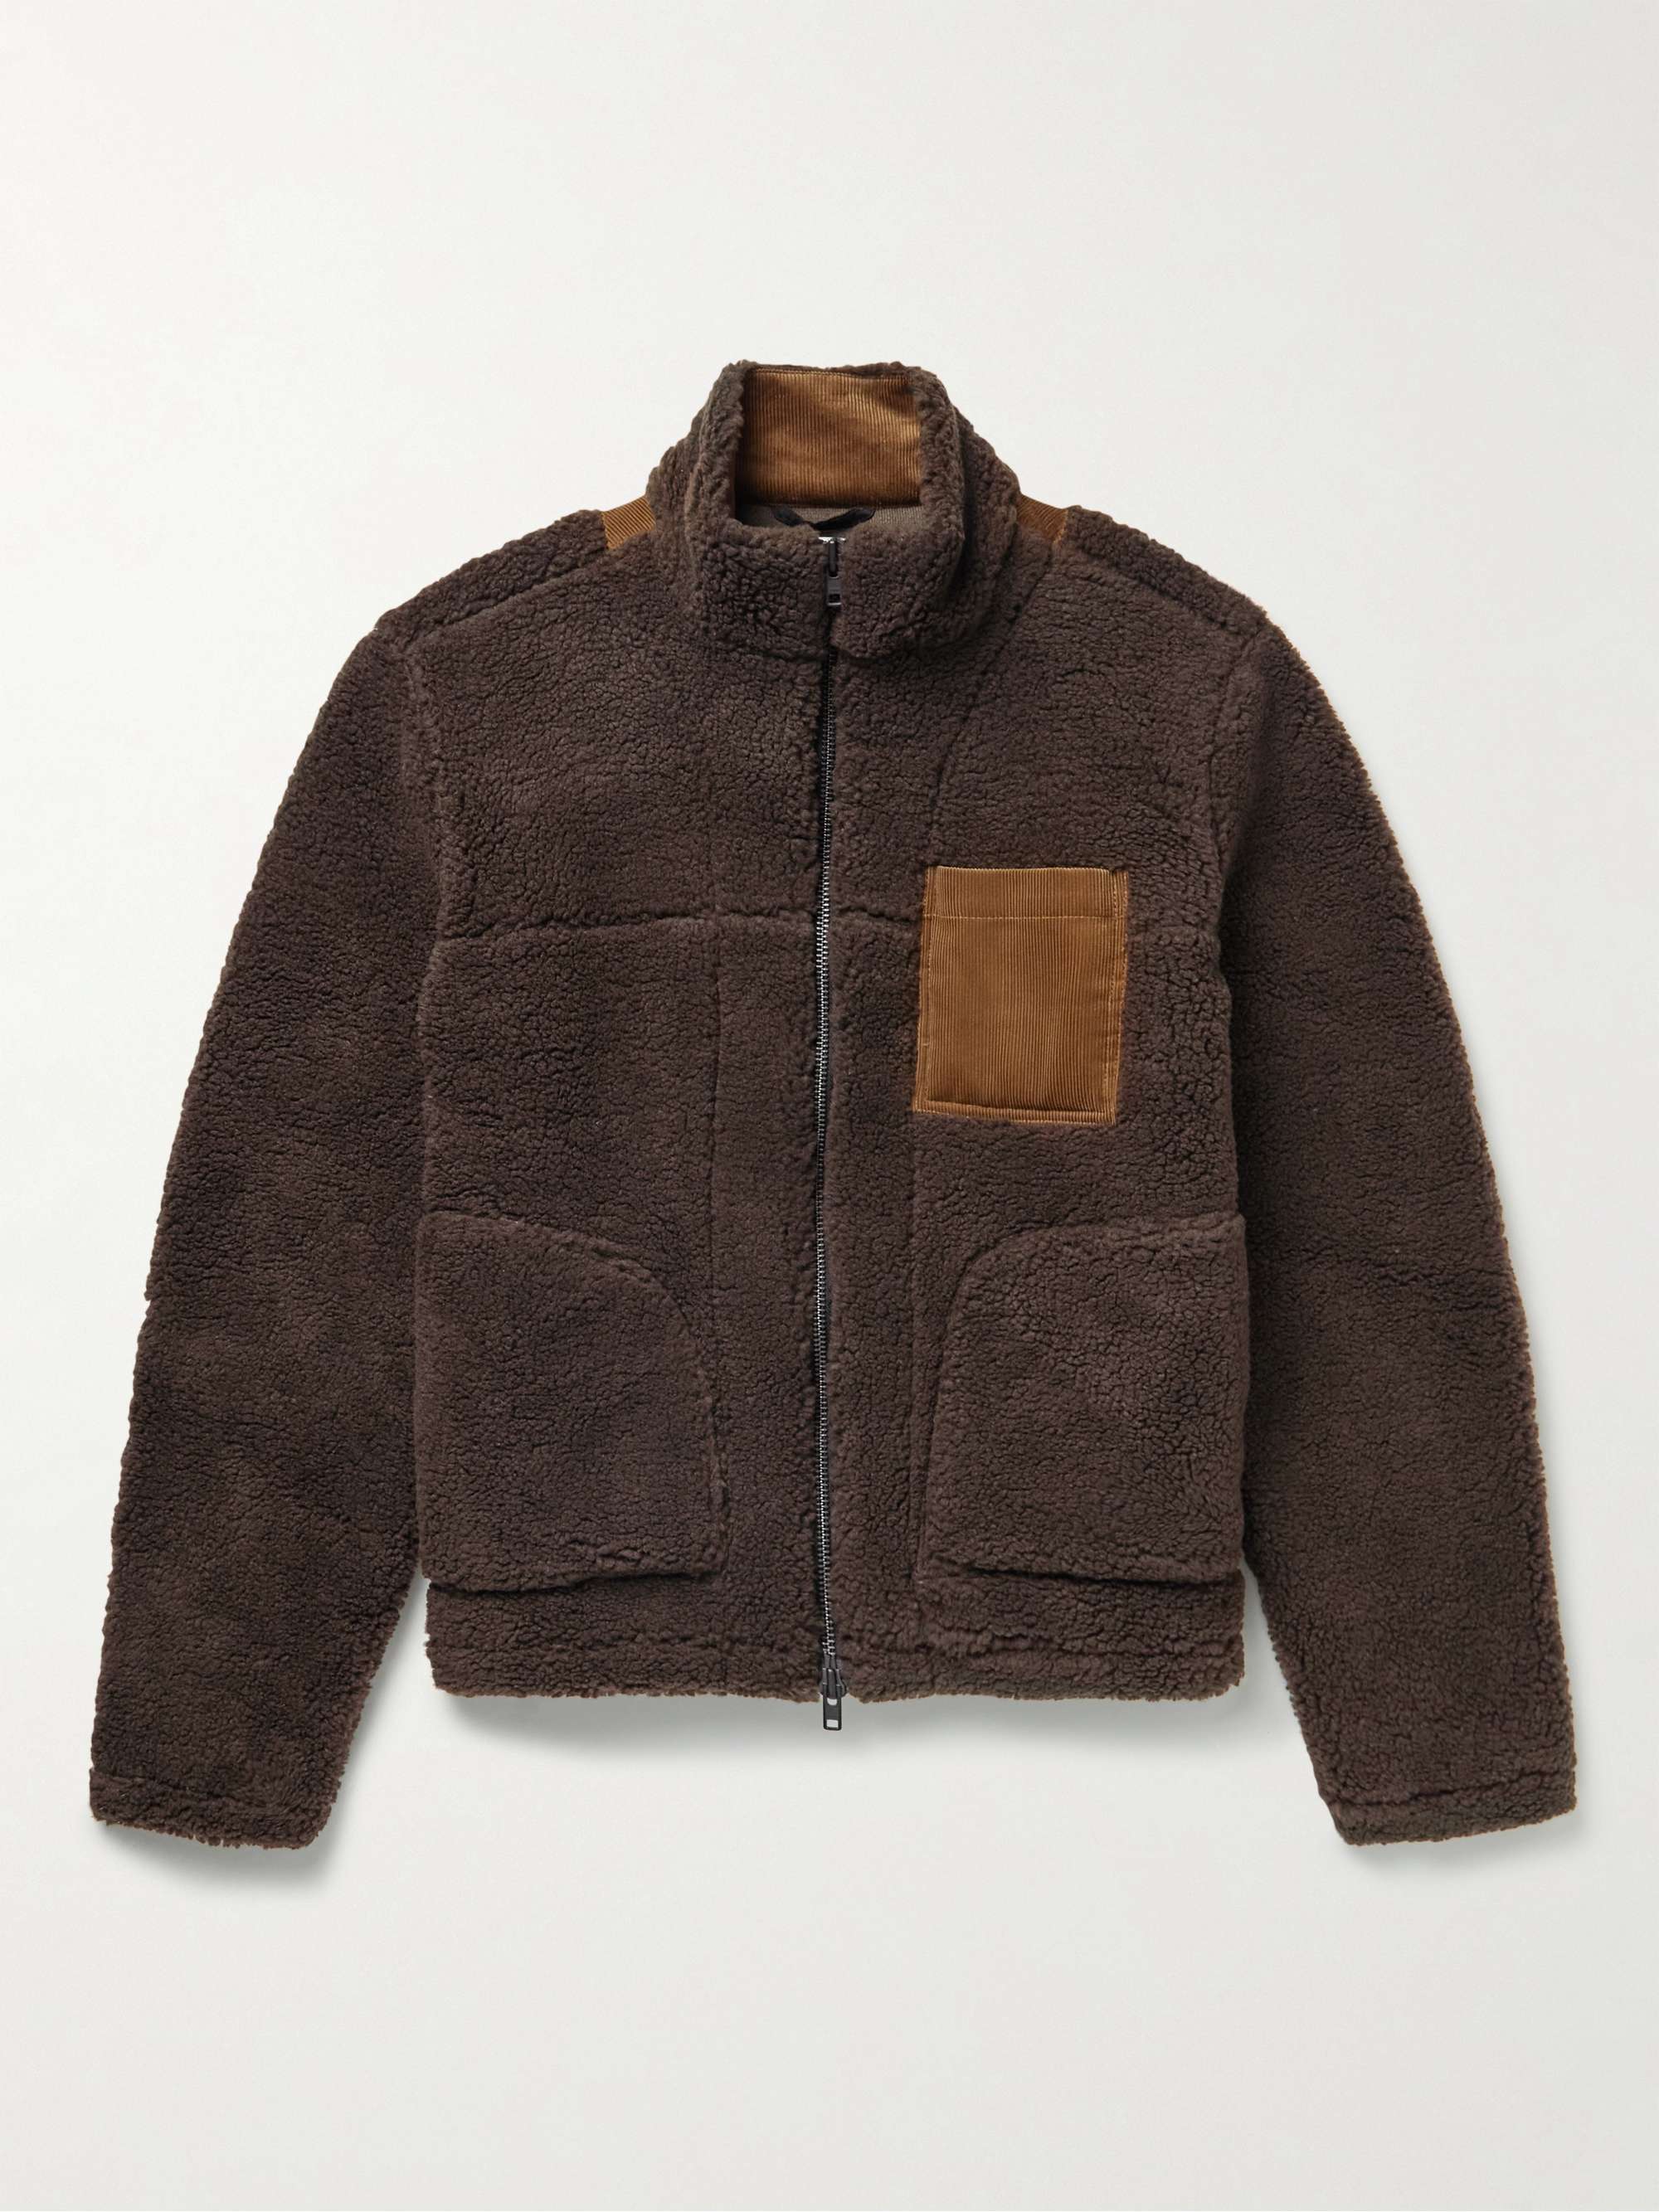 OLIVER SPENCER Bembridge Corduroy-Trimmed Fleece Jacket for Men | MR PORTER